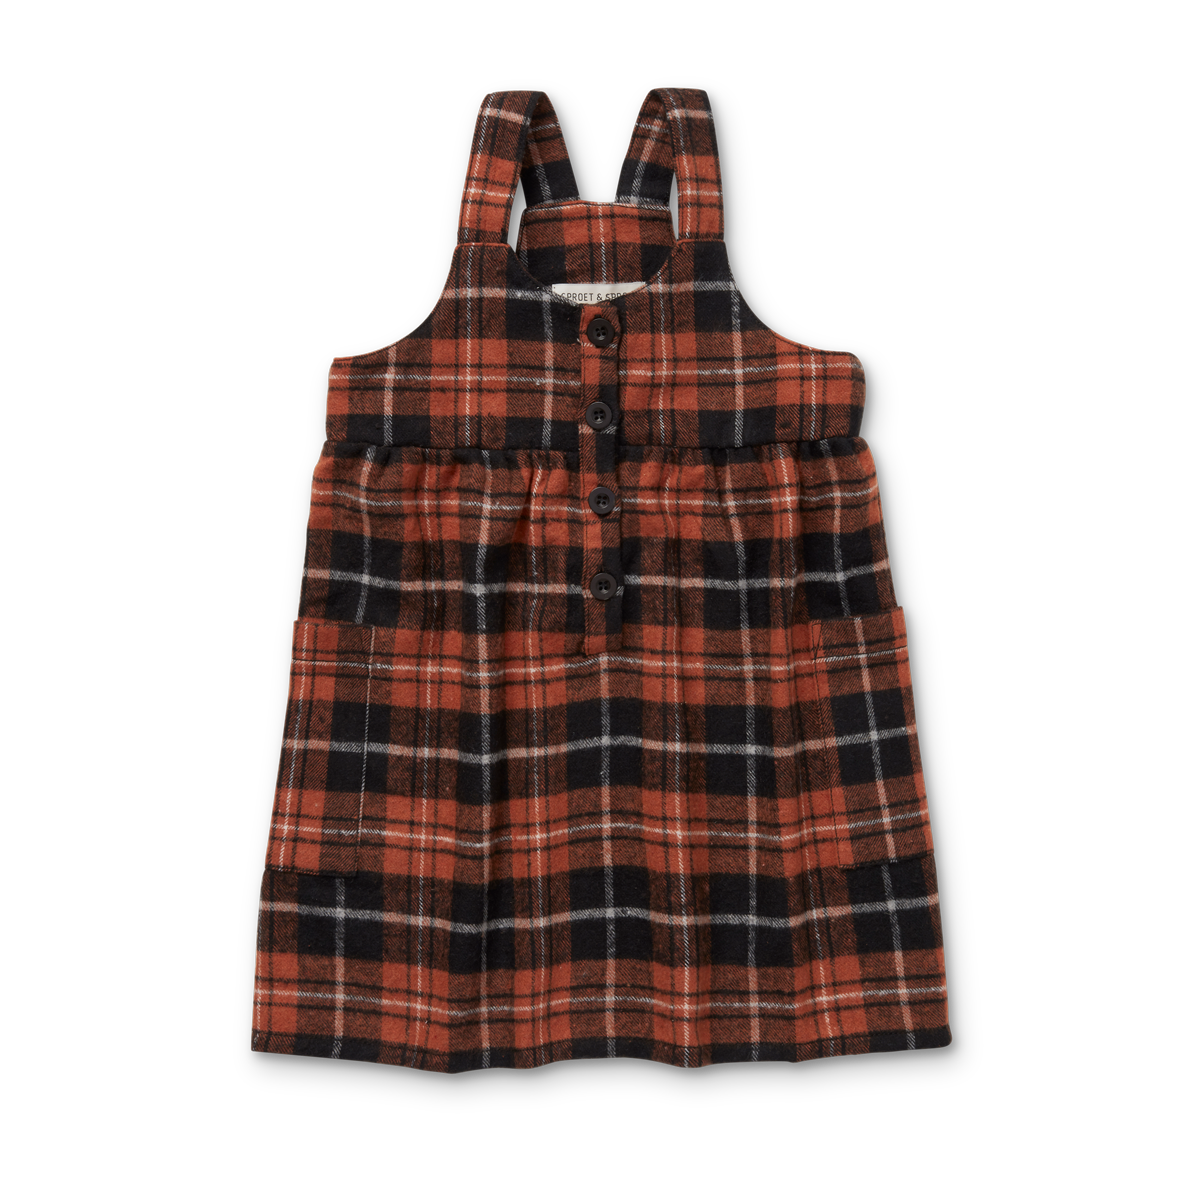 【オランダ直送】Salopette dress flannel check チェックサロペットワンピース // 送料無料 //